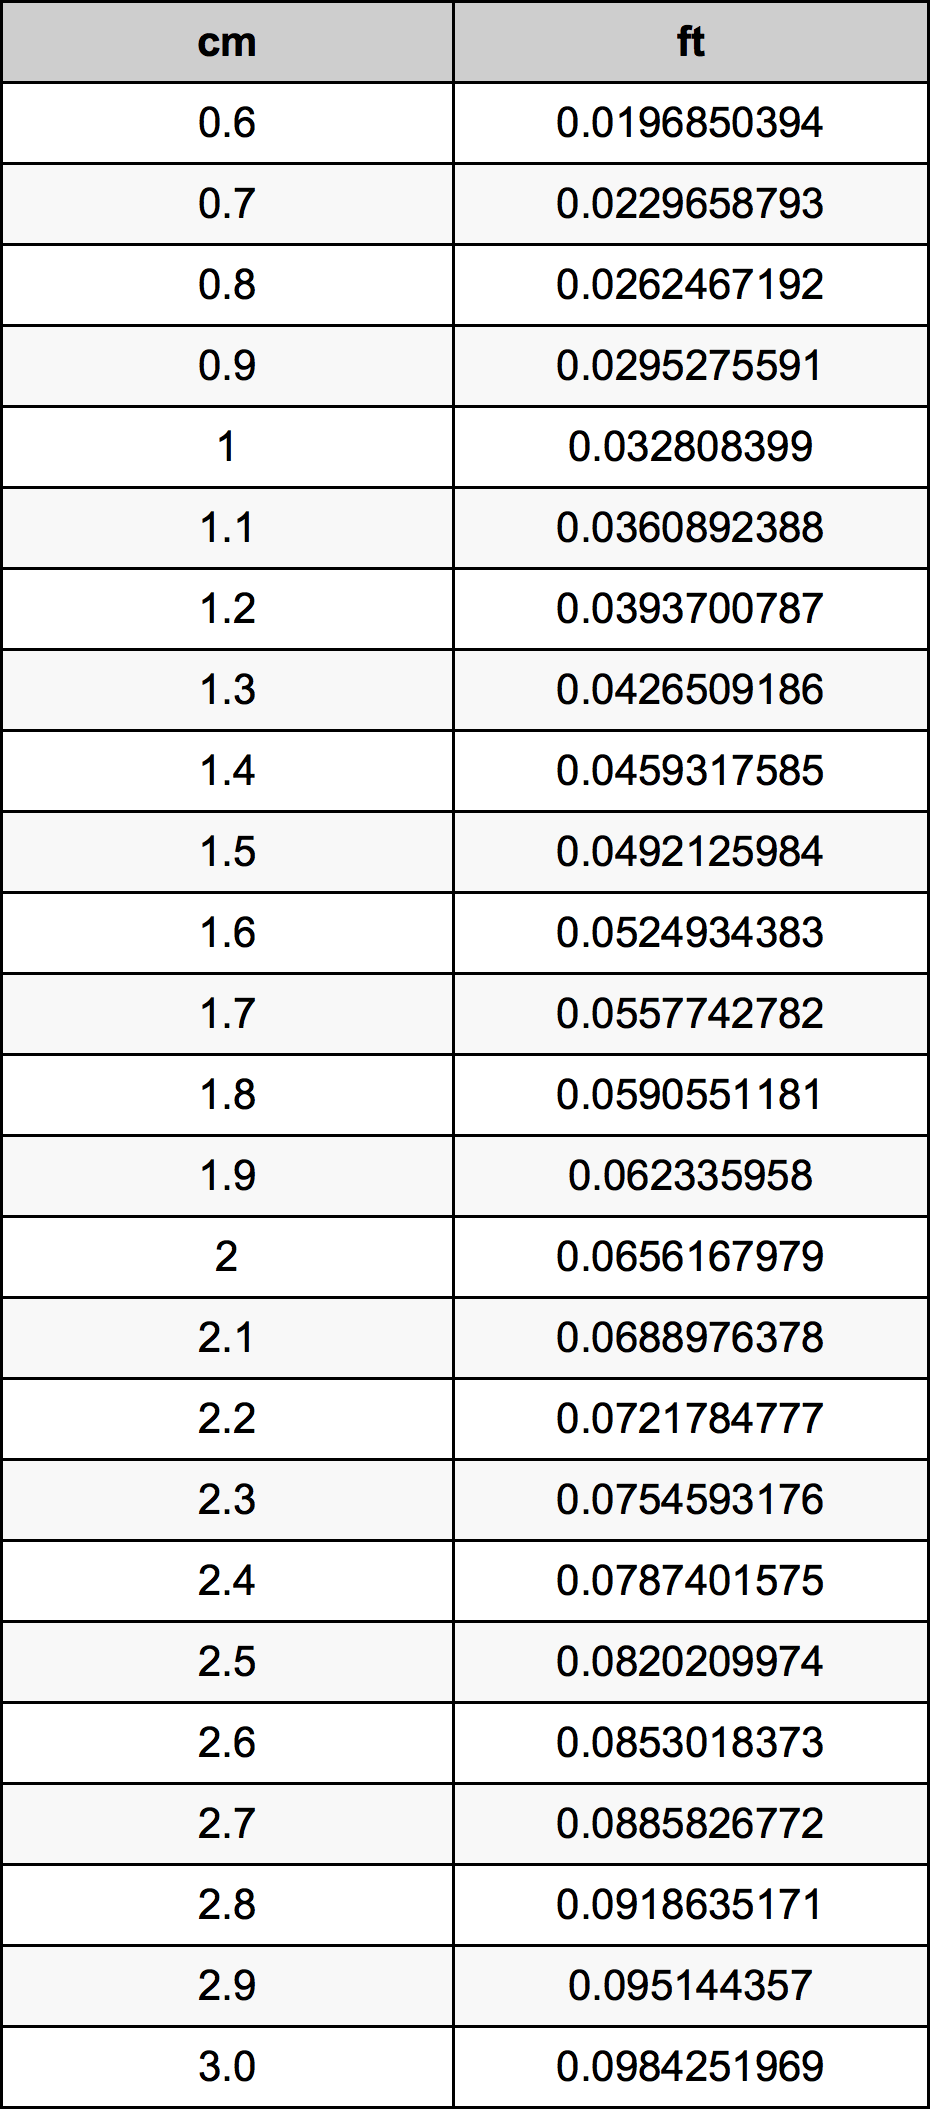 1.8 Centiméter átszámítási táblázat